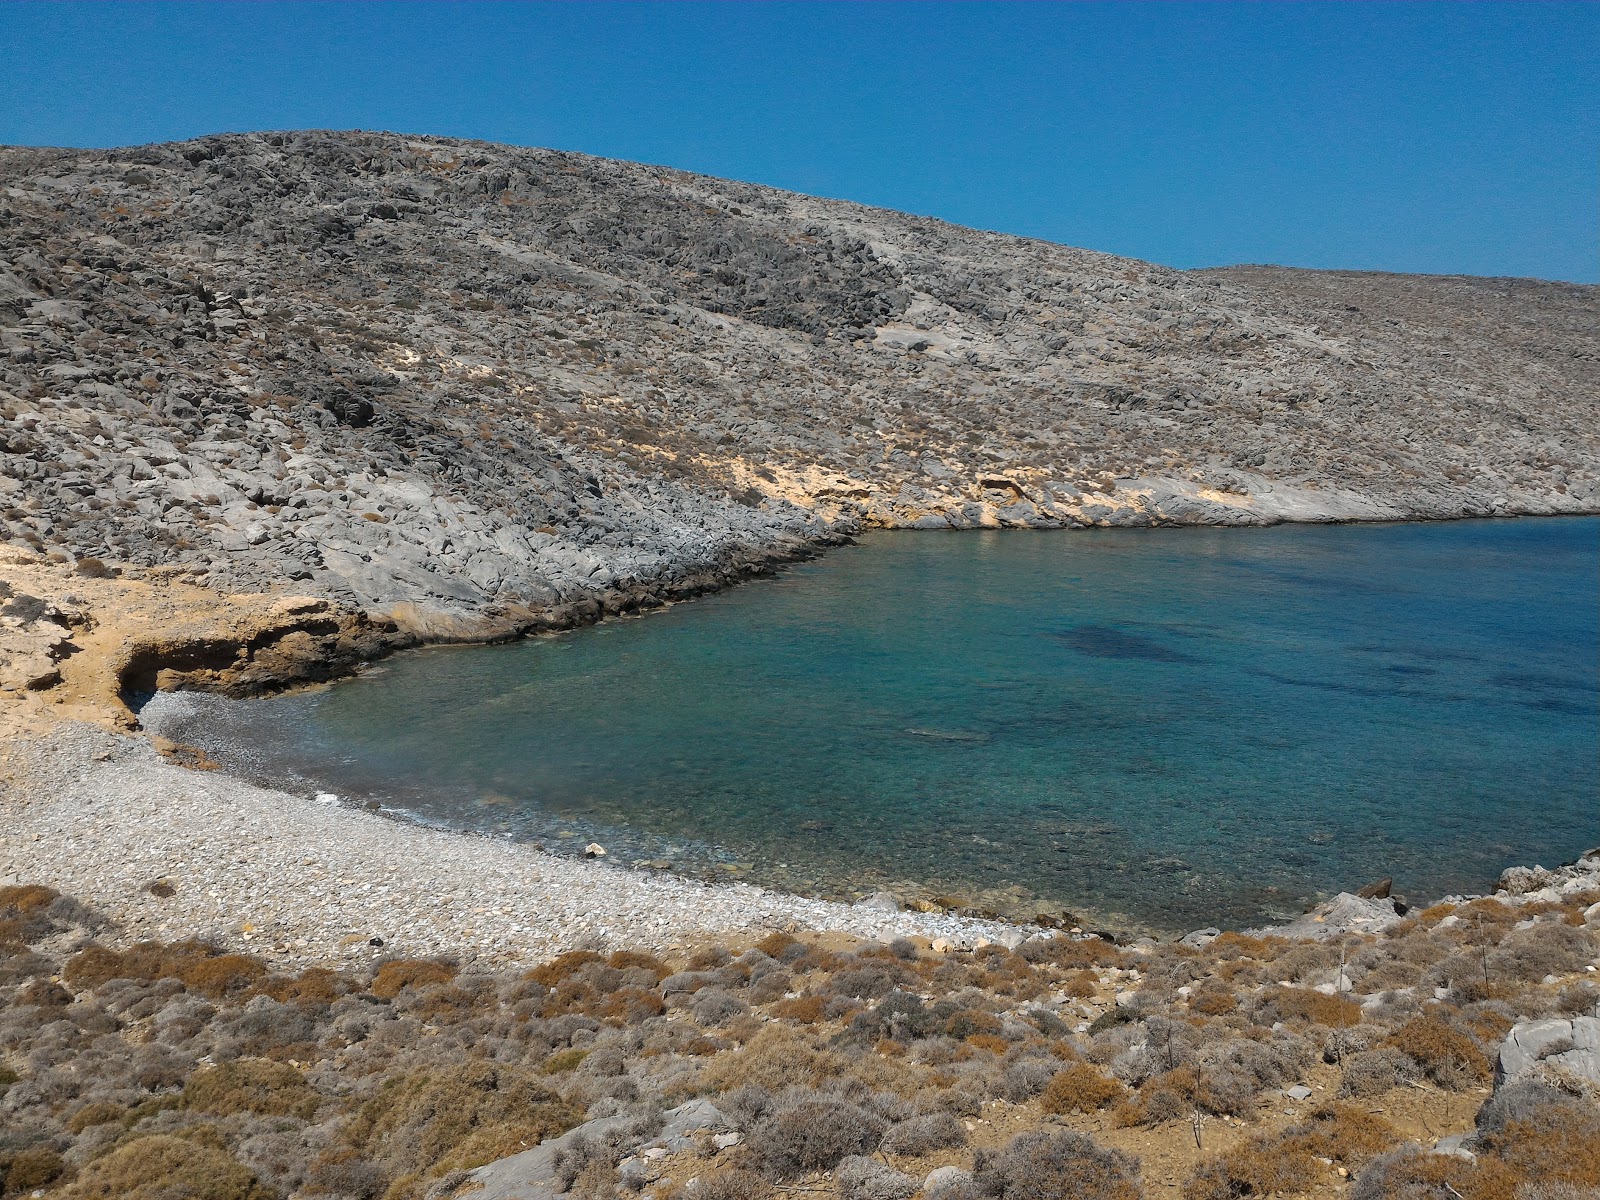 Foto von Spiaggia delle capre mit feiner heller kies Oberfläche